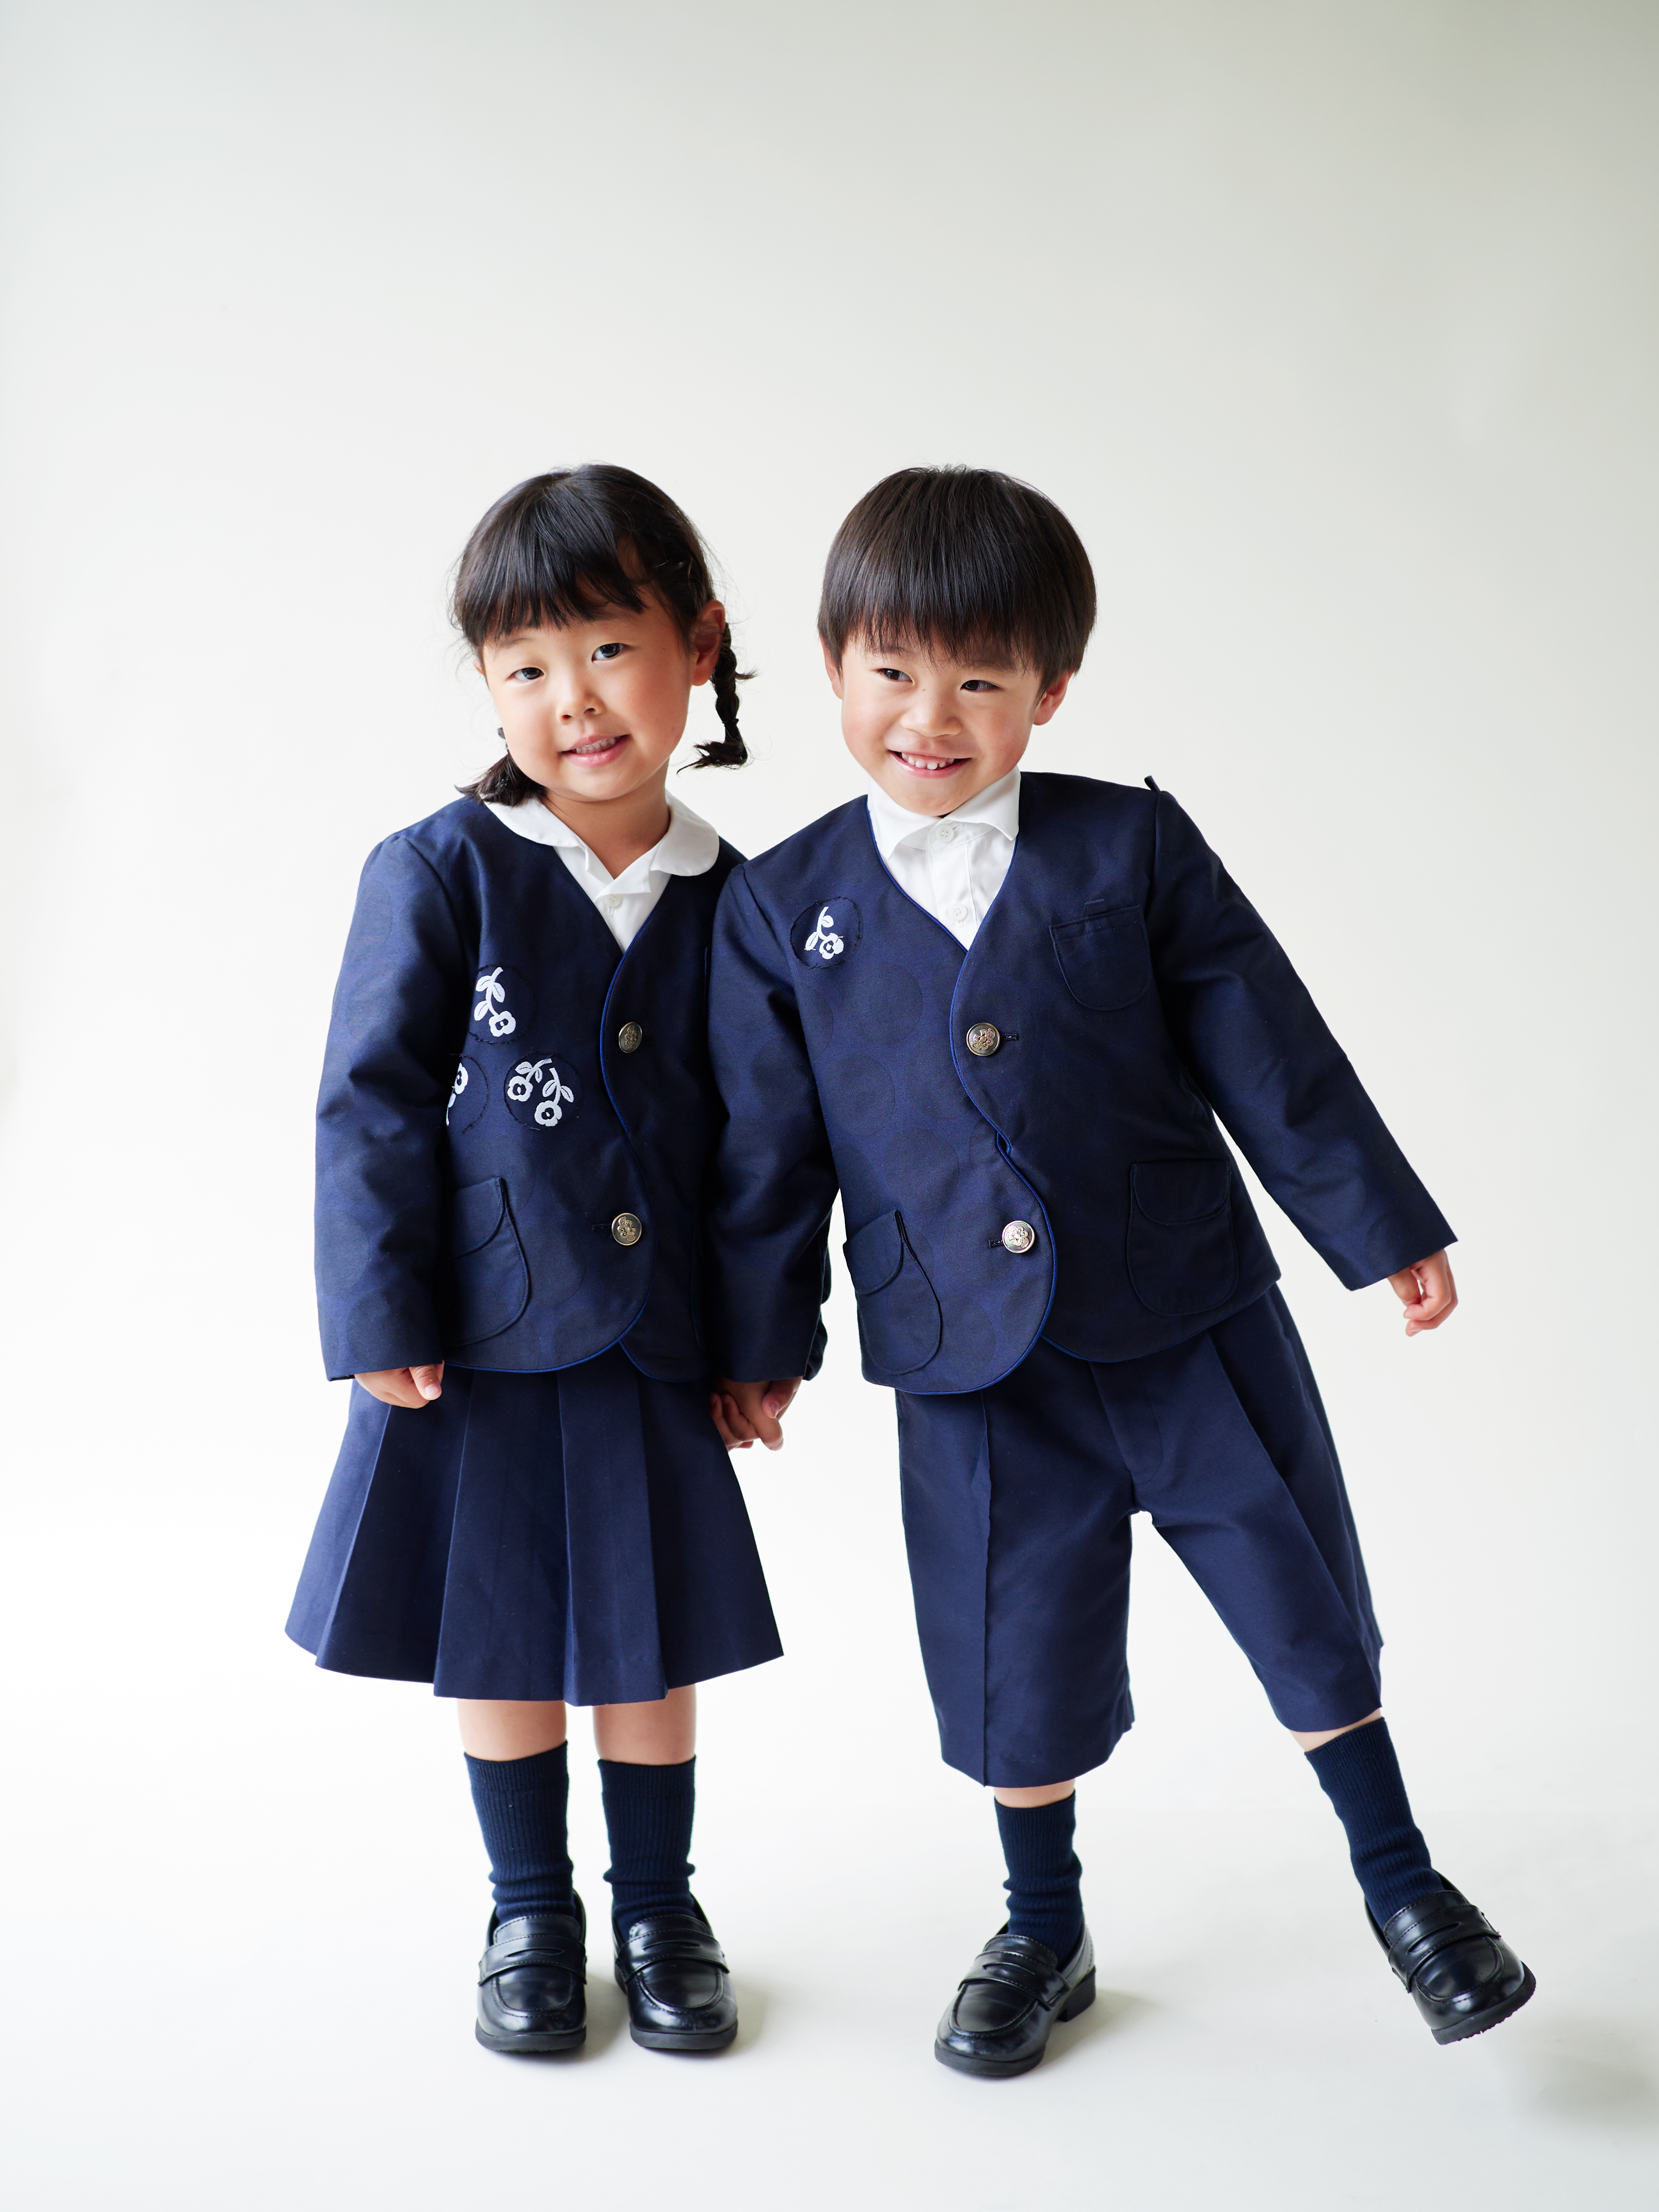 愛知県 あま市 明和幼稚園 制服 制服セット 男の子 - 愛知県の子供用品